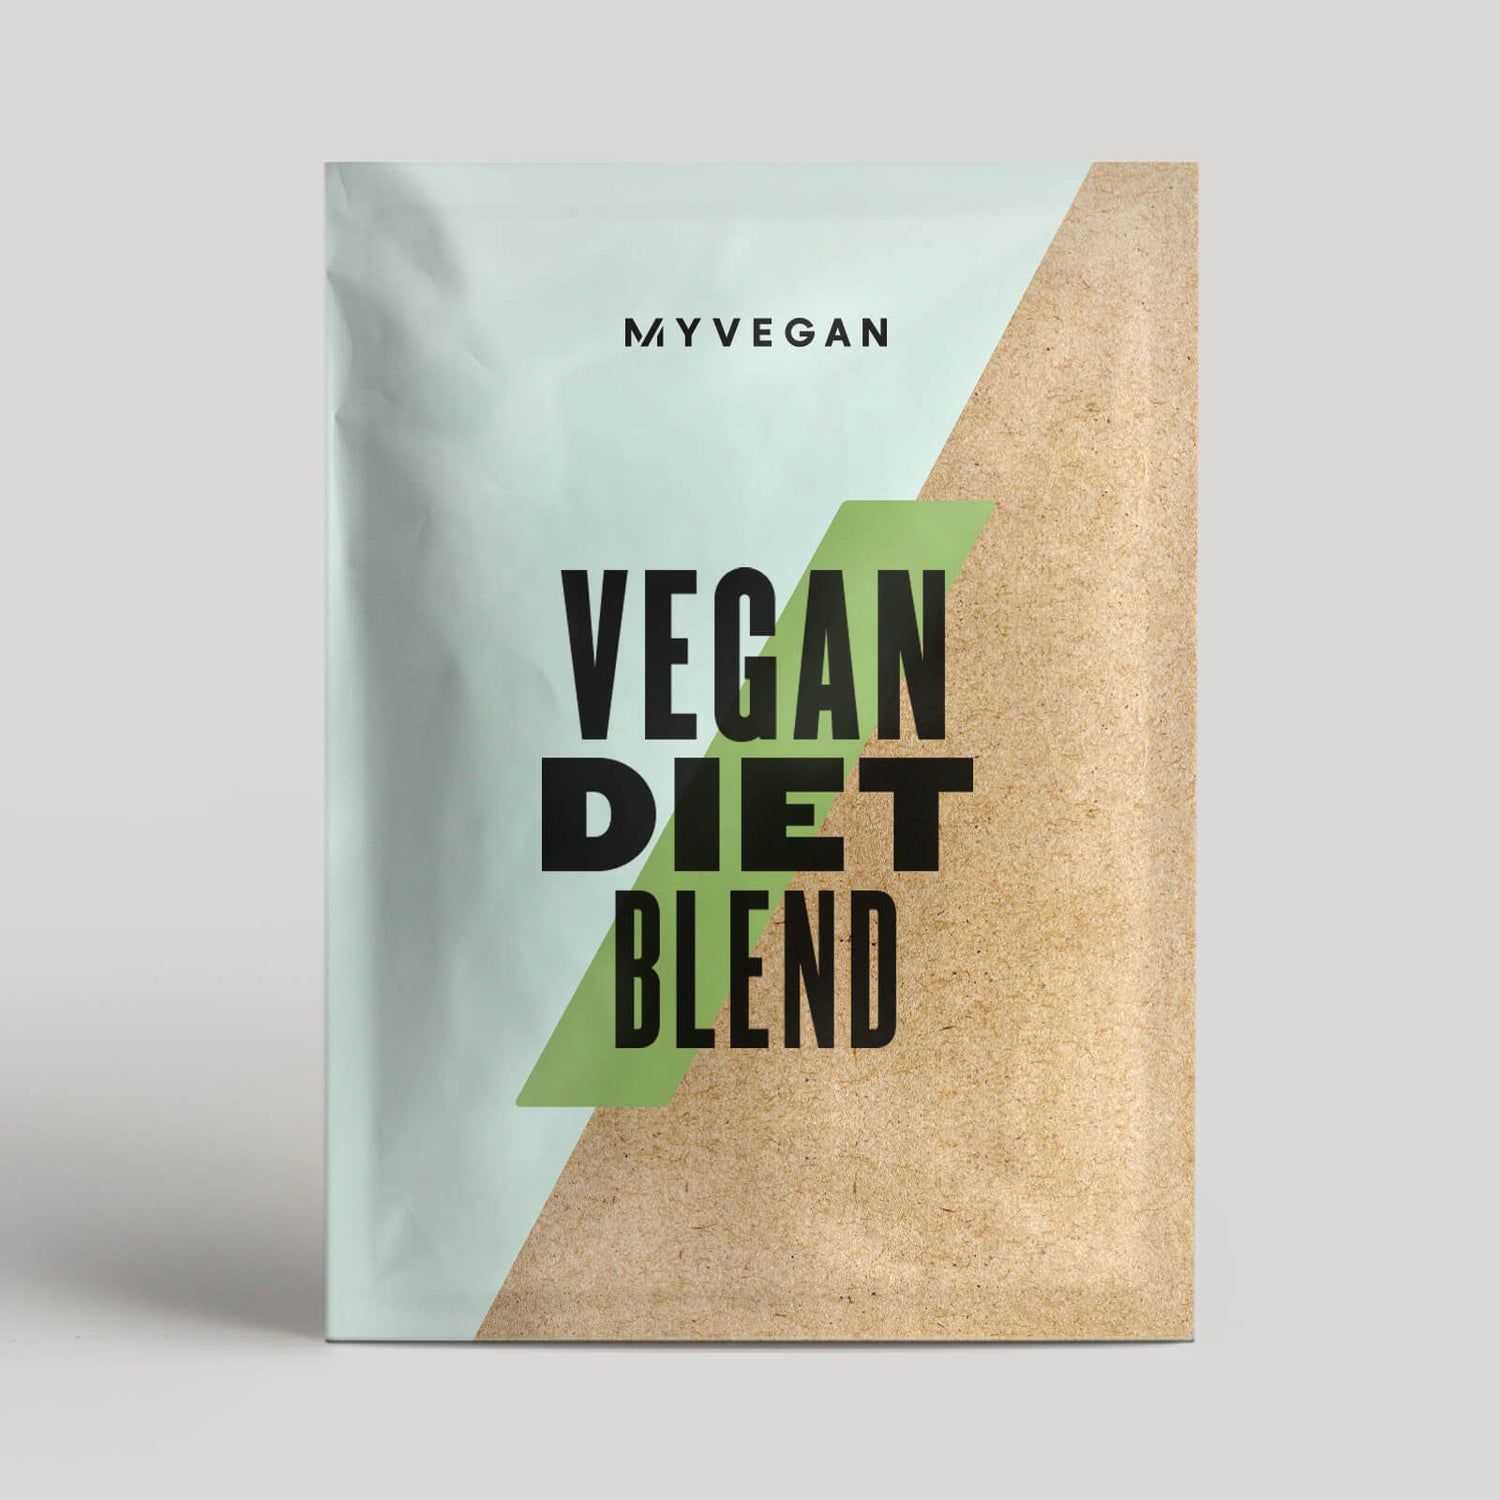 Myvegan Vegan Diet Blend (Sample) - 17g - Кофе и карамель